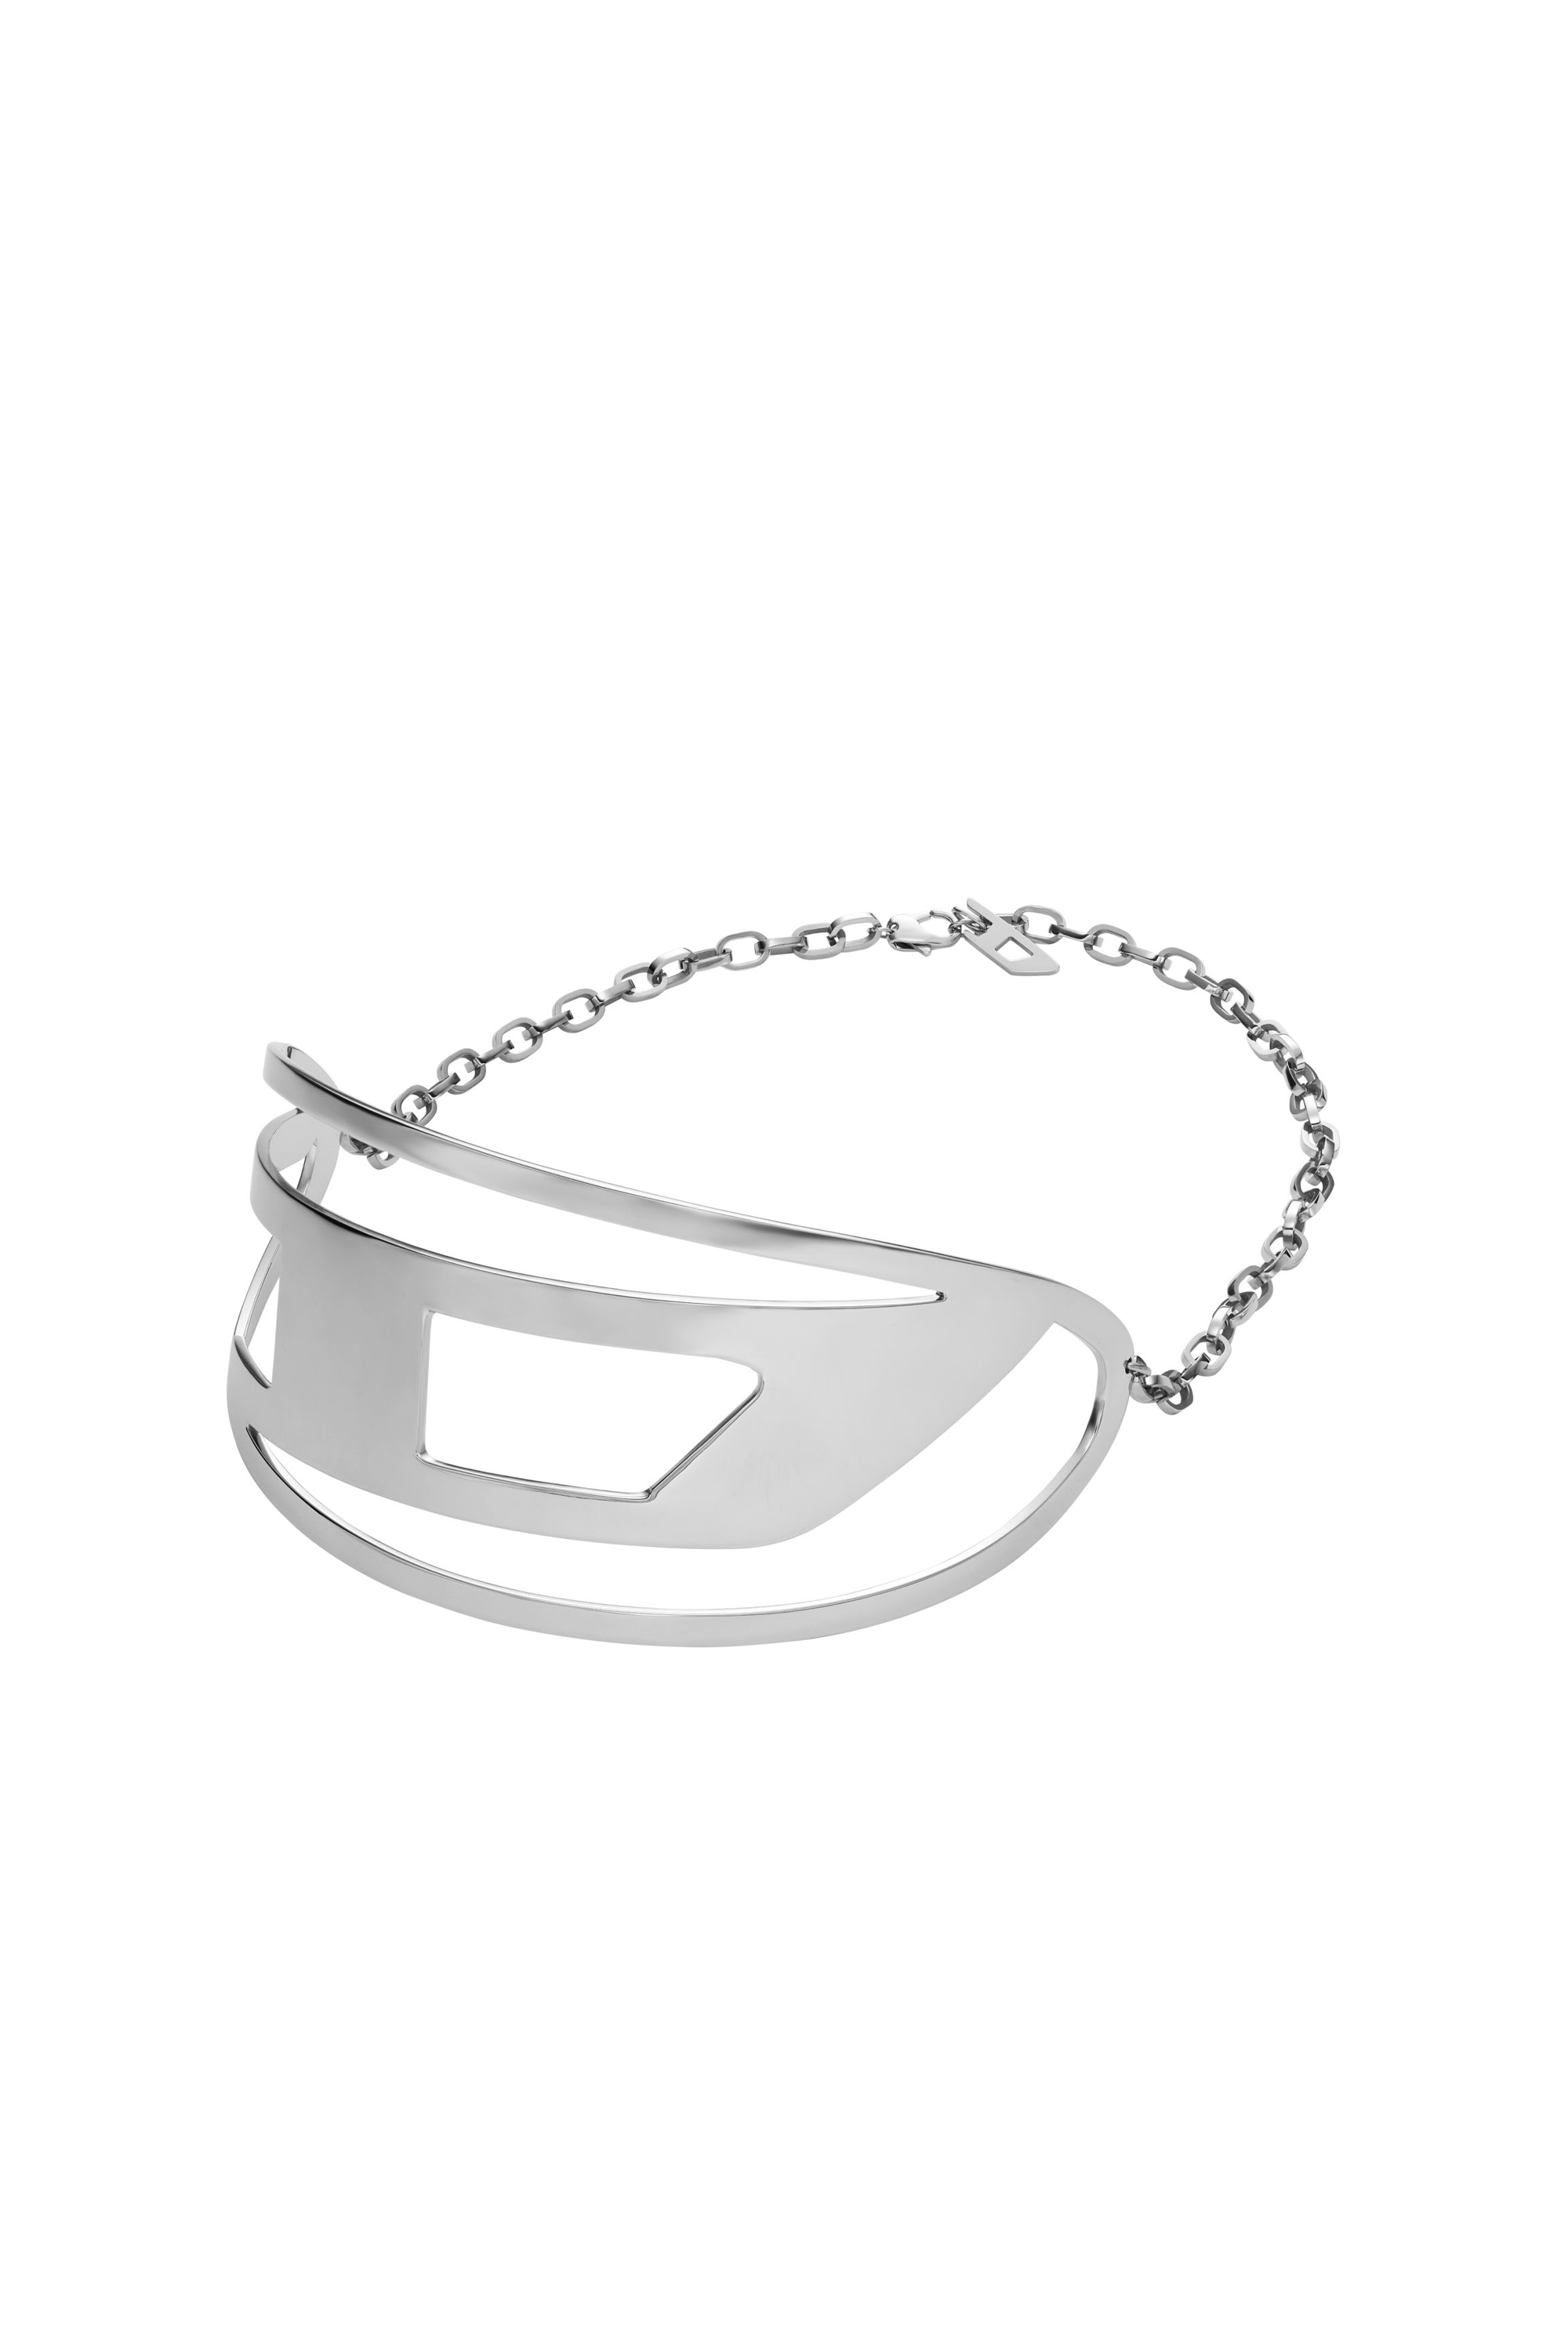 Diesel - Choker aus Edelstahl - Halsketten - Unisex - Silber